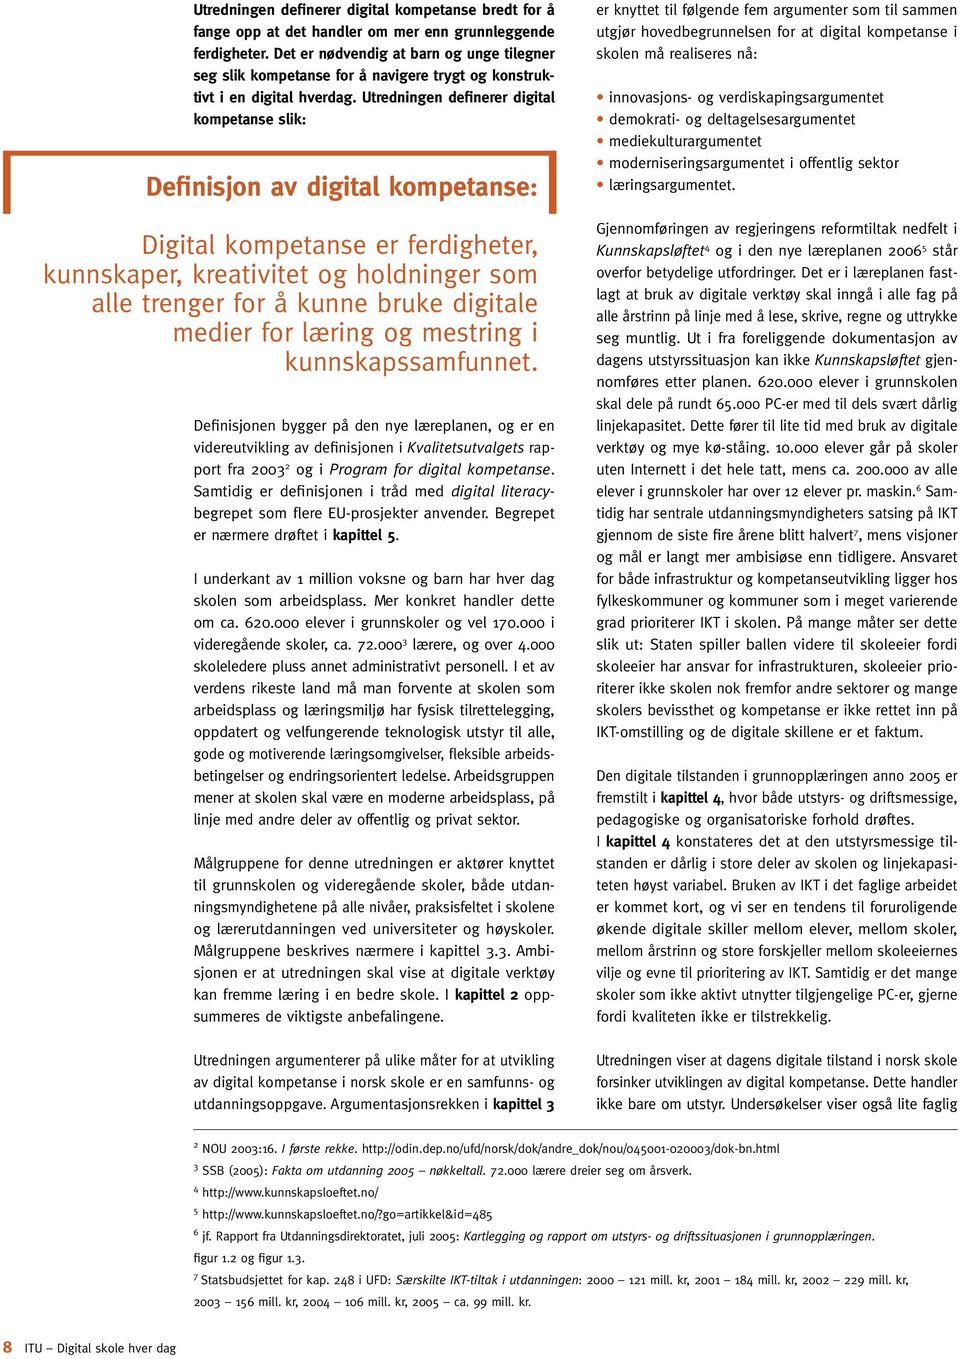 Utredningen definerer digital kompetanse slik: Definisjon av digital kompetanse: Digital kompetanse er ferdigheter, kunnskaper, kreativitet og holdninger som alle trenger for å kunne bruke digitale